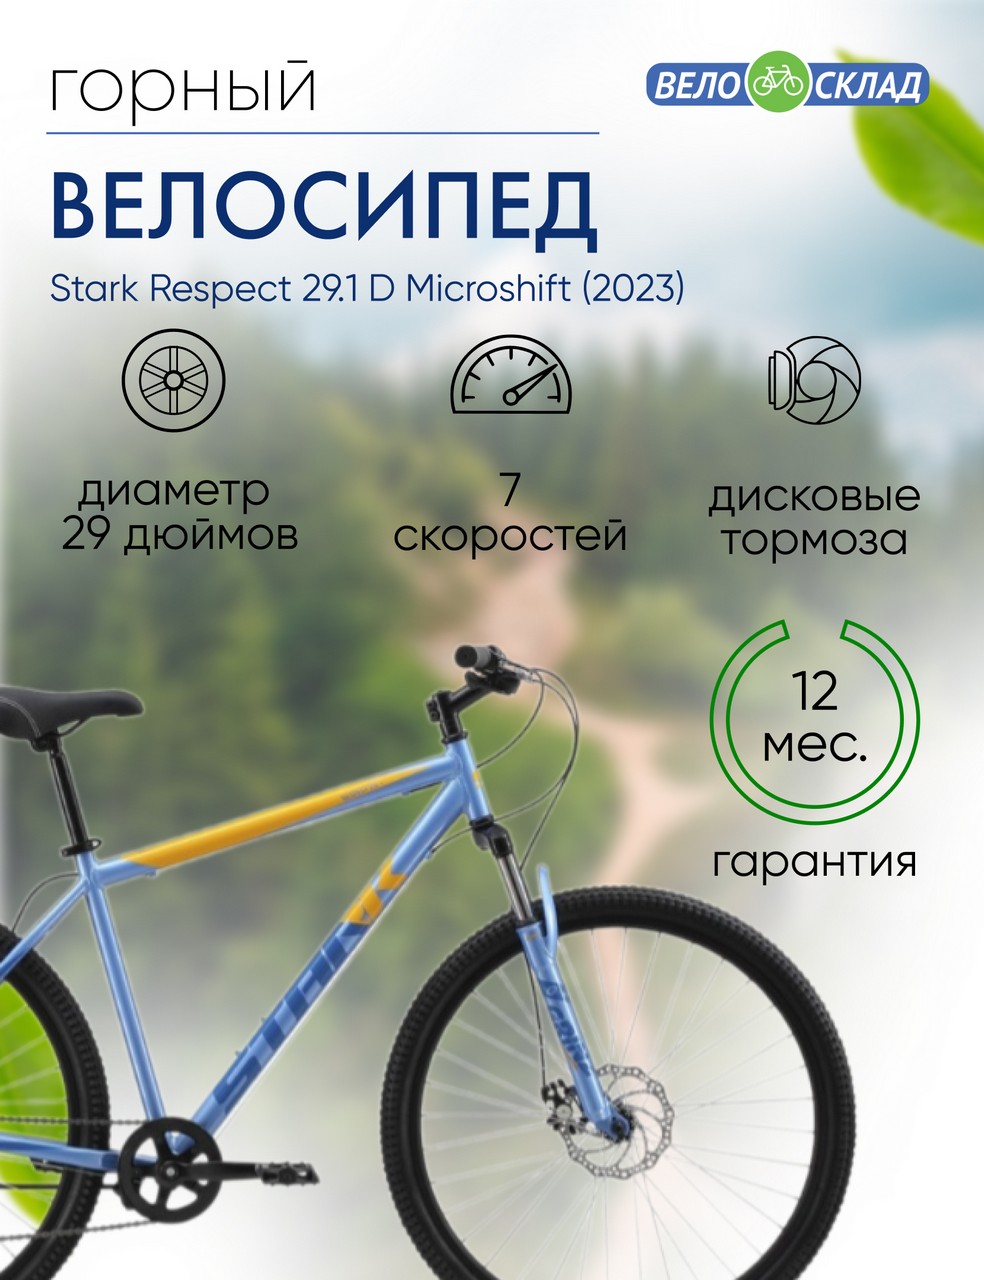 Горный велосипед Stark Respect 29.1 D Microshift, год 2023, цвет Голубой-Синий, ростовка 18